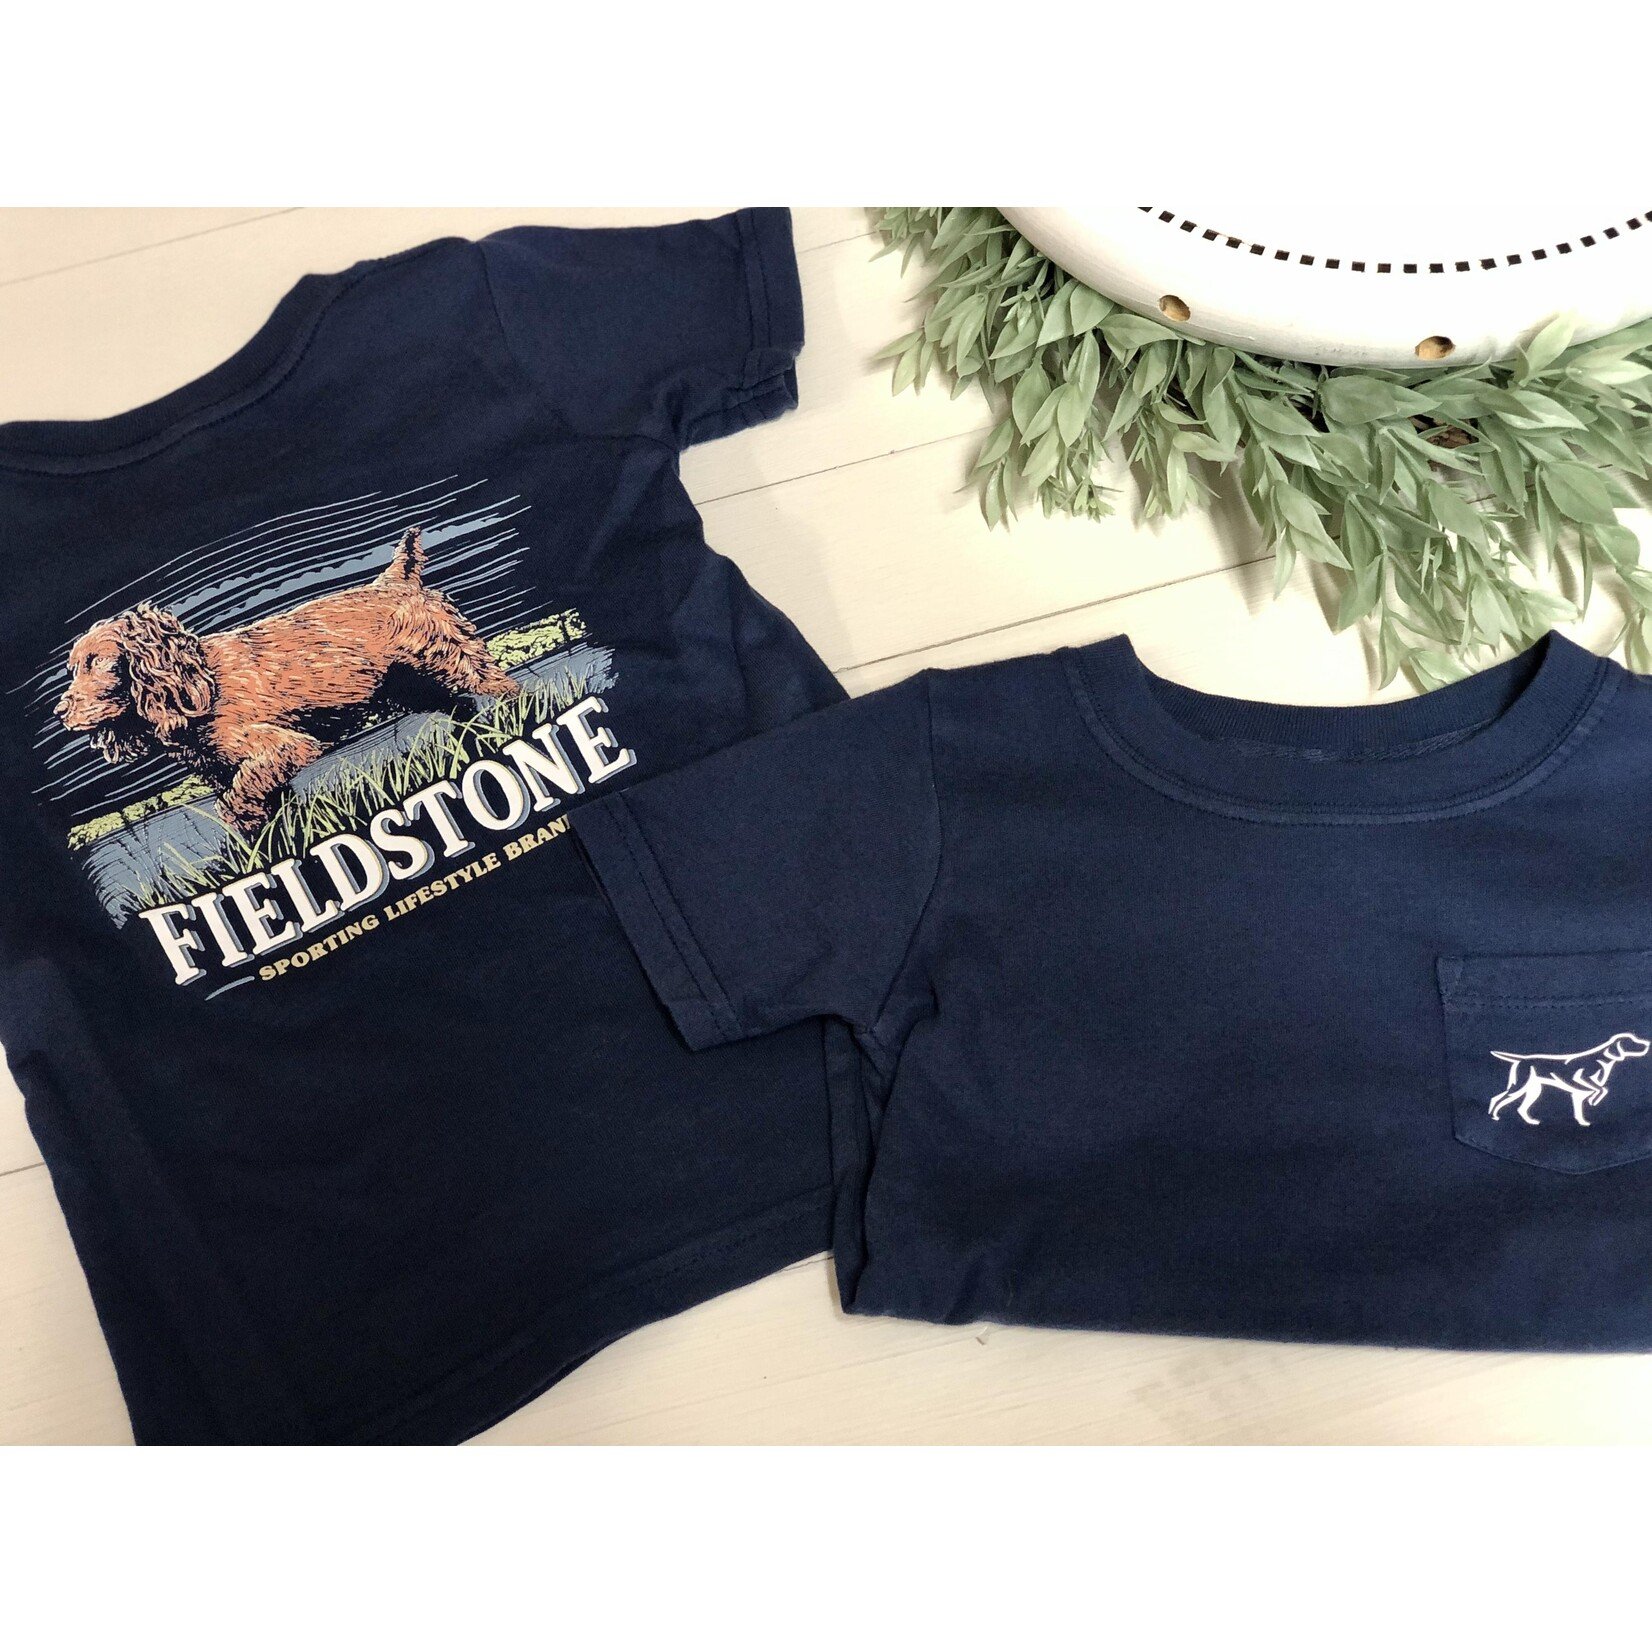 Fieldstone Fieldstone Apparel Youth Boykin in Grass S/S TEE Shirt